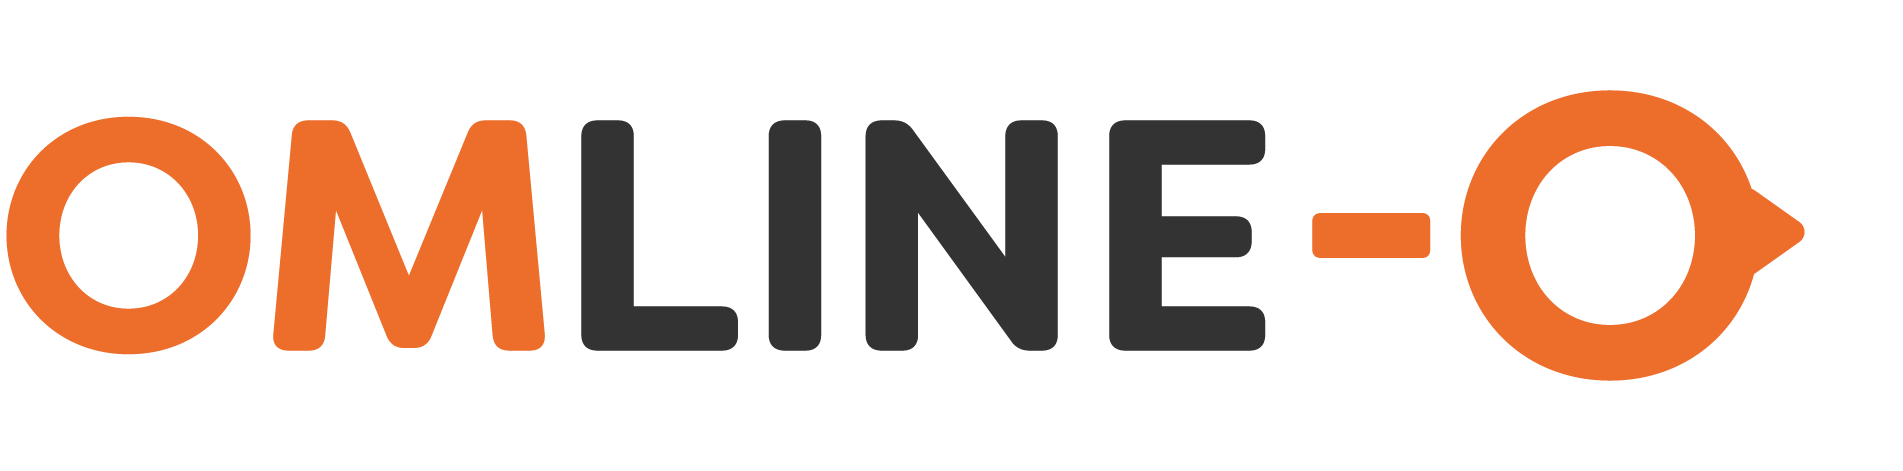 OMLINE-O 製品サポート